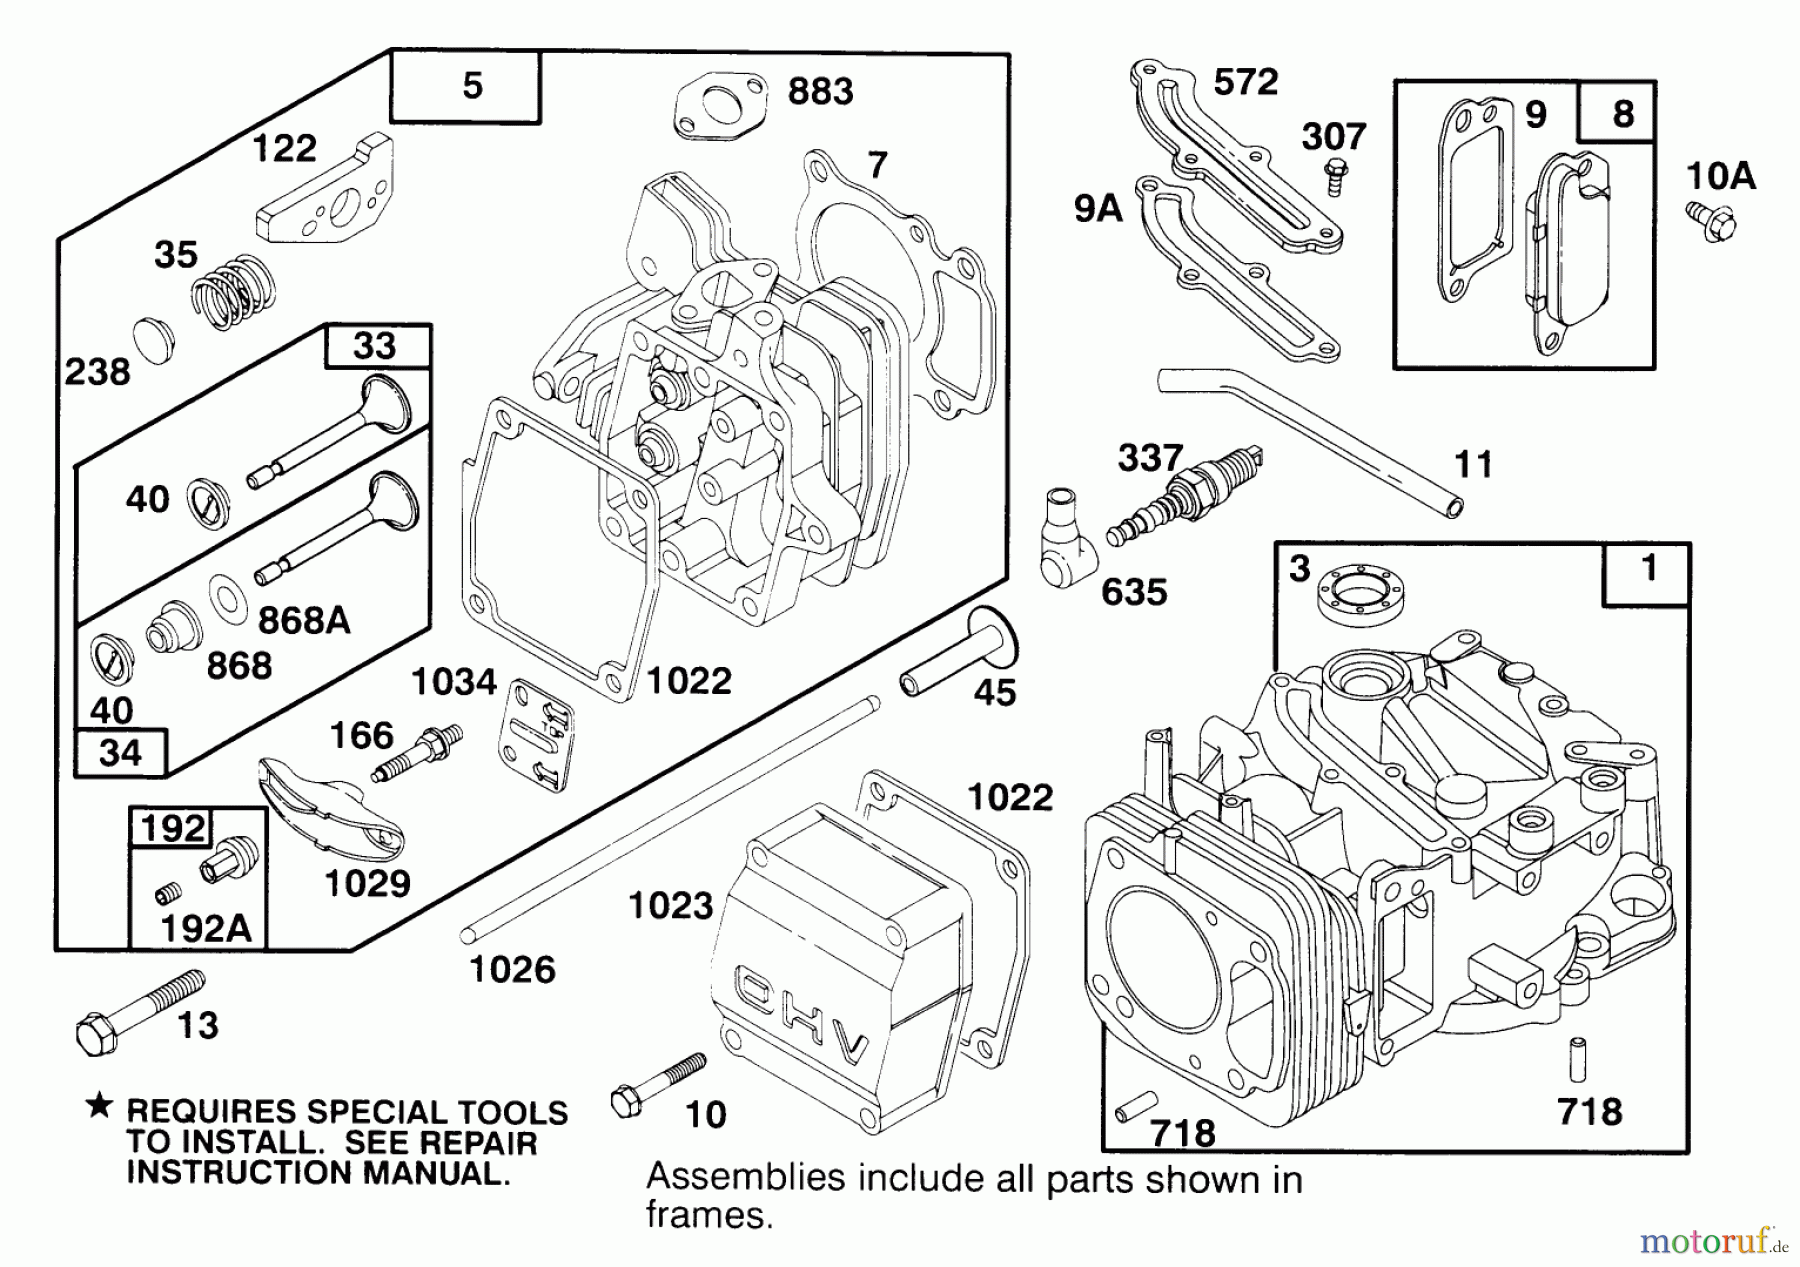  Toro Neu Mowers, Walk-Behind Seite 2 22145 - Toro Lawnmower, 1996 (69000001-69999999) ENGINE GTS 150 #1